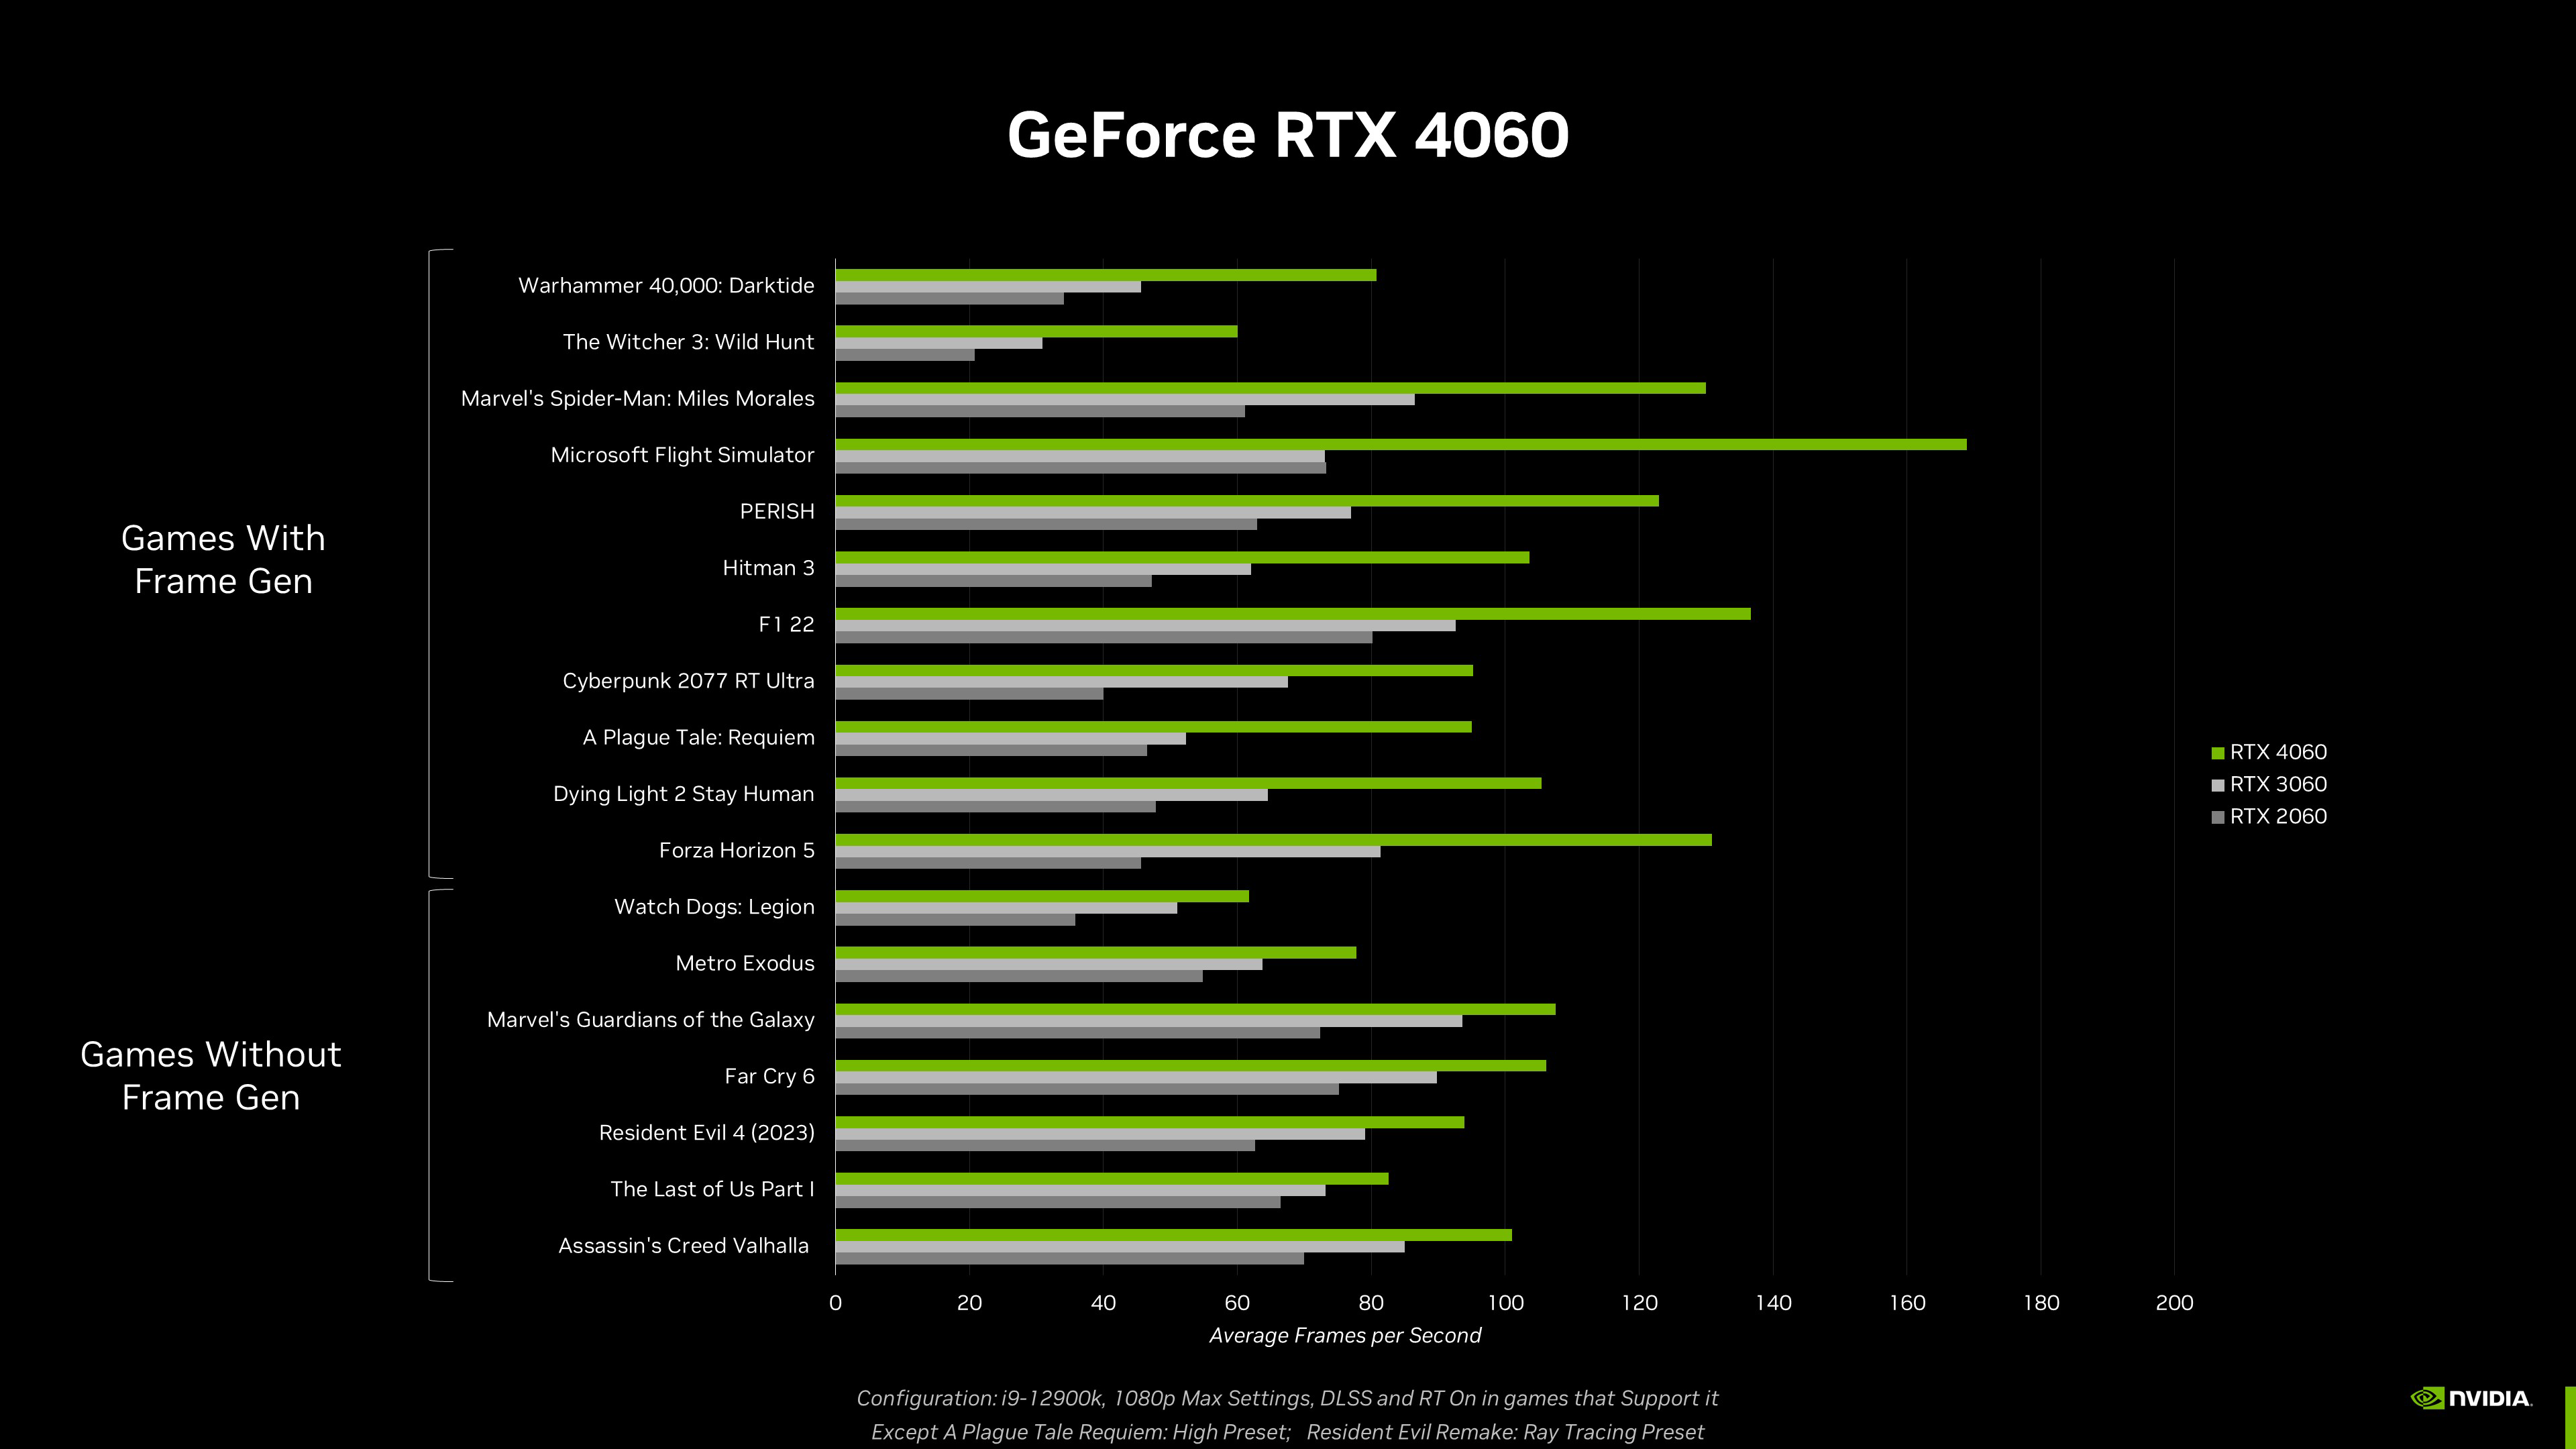 Nvidia GeForce RTX 4070 vs. RTX 4060 Ti 16GB